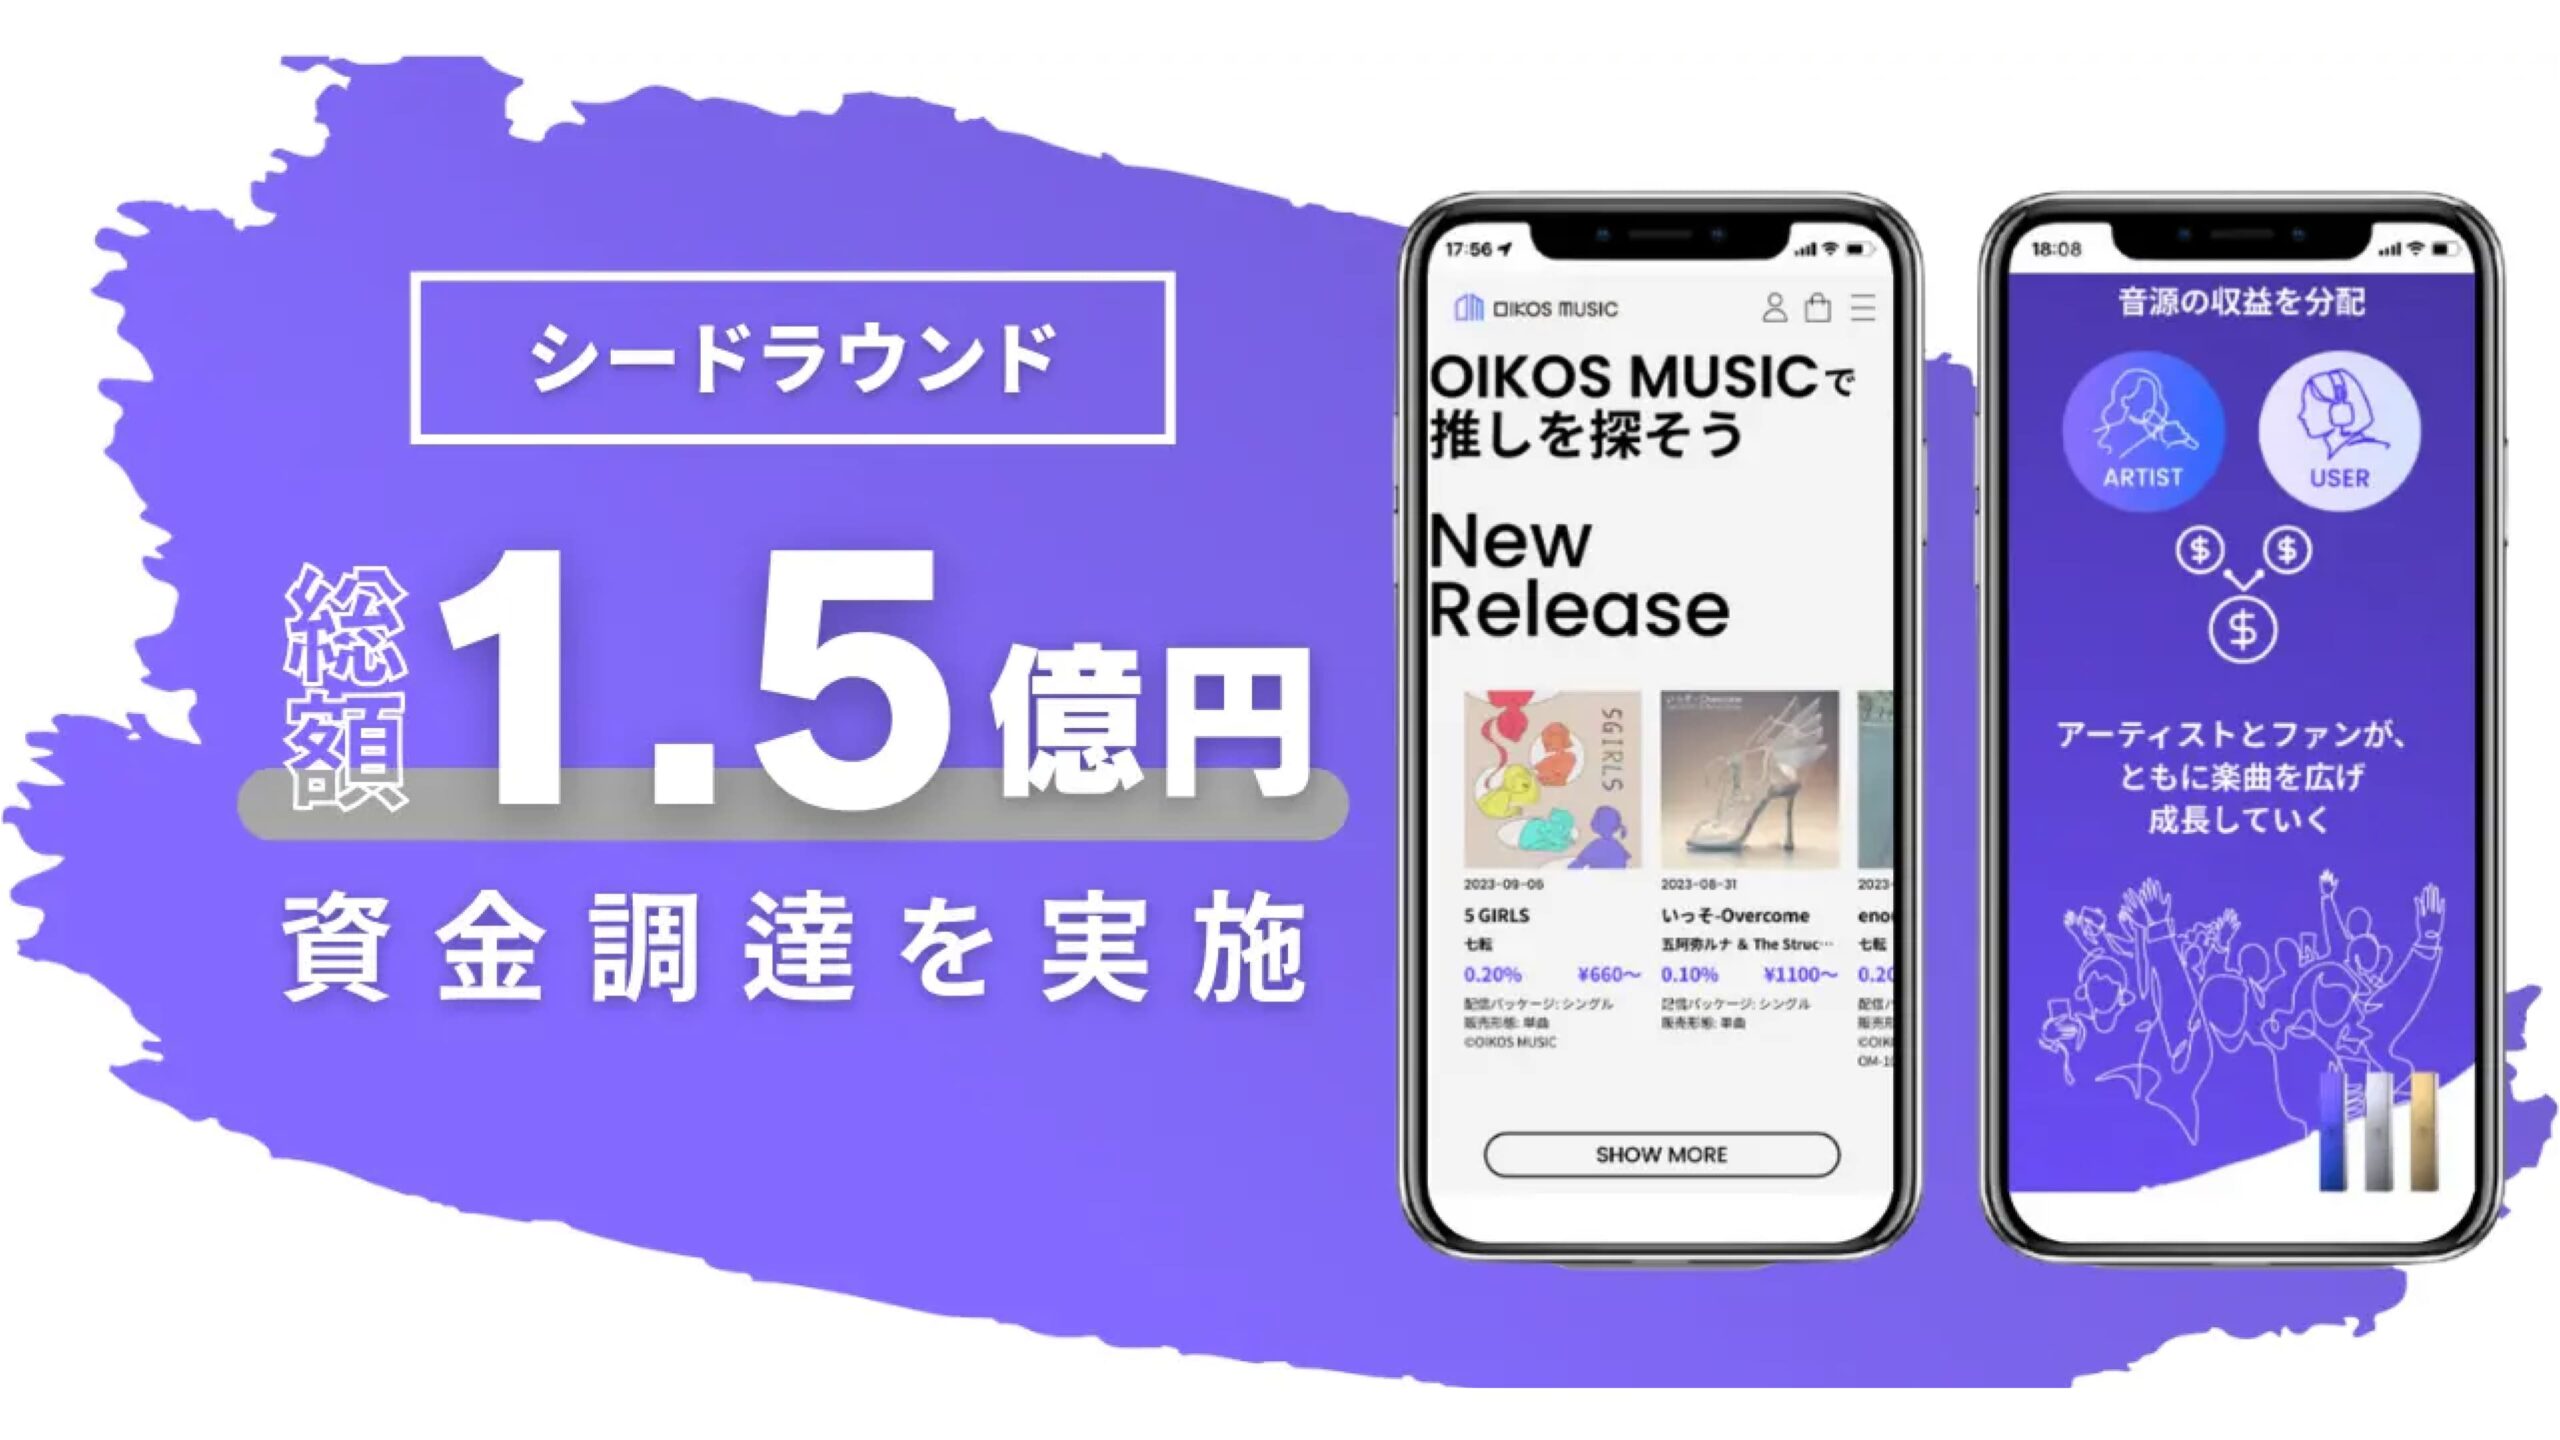 アーティストとファンの応援文化の新しいカタチを提唱するOIKOS MUSIC株式会社シードラウンドで1.5億円調達